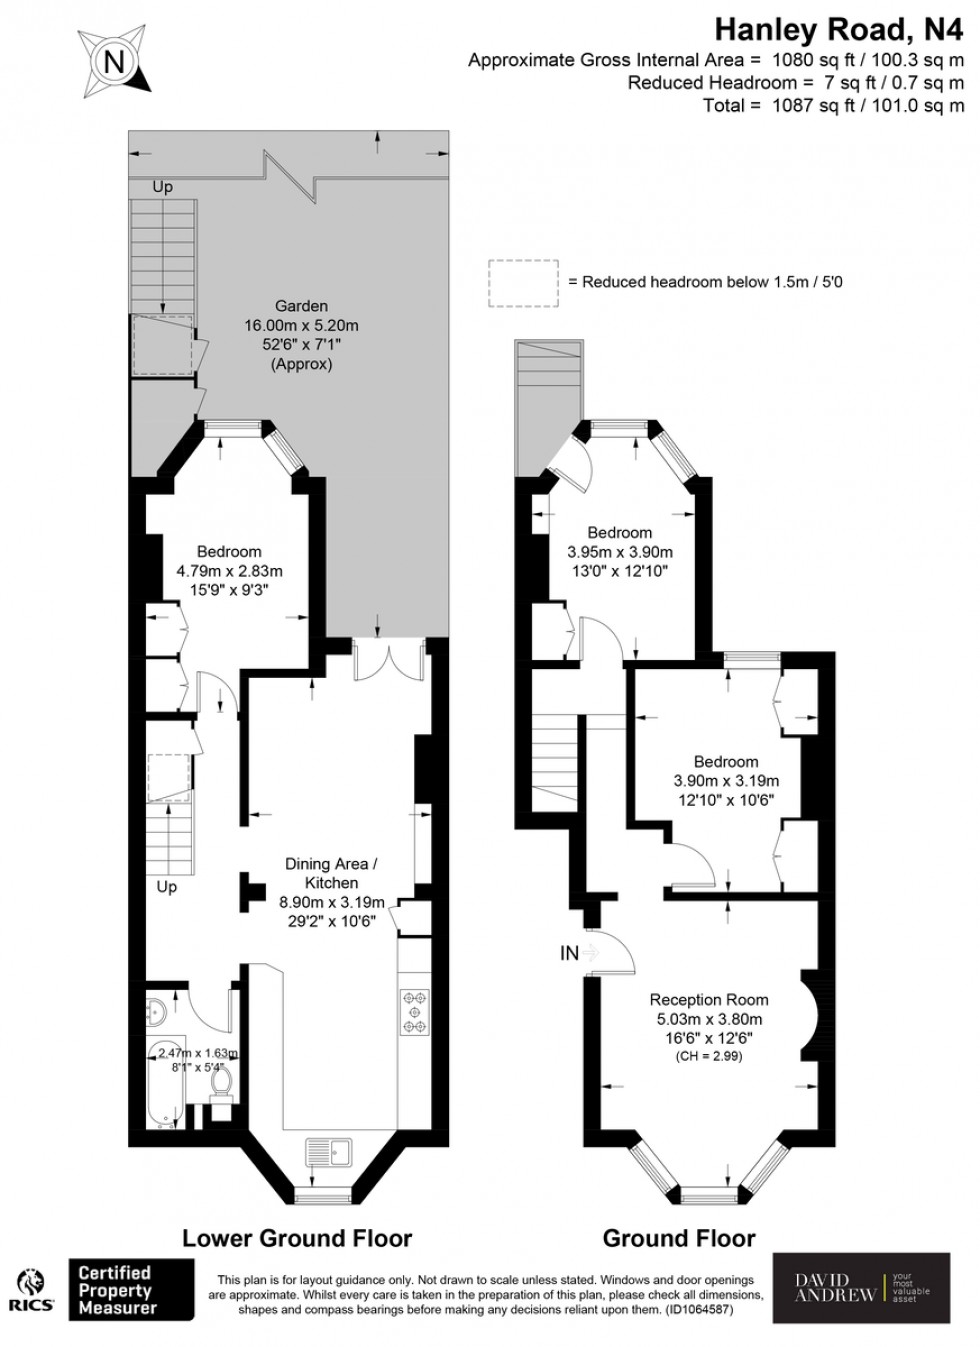 Floorplan for Hanley Road N4 3DW